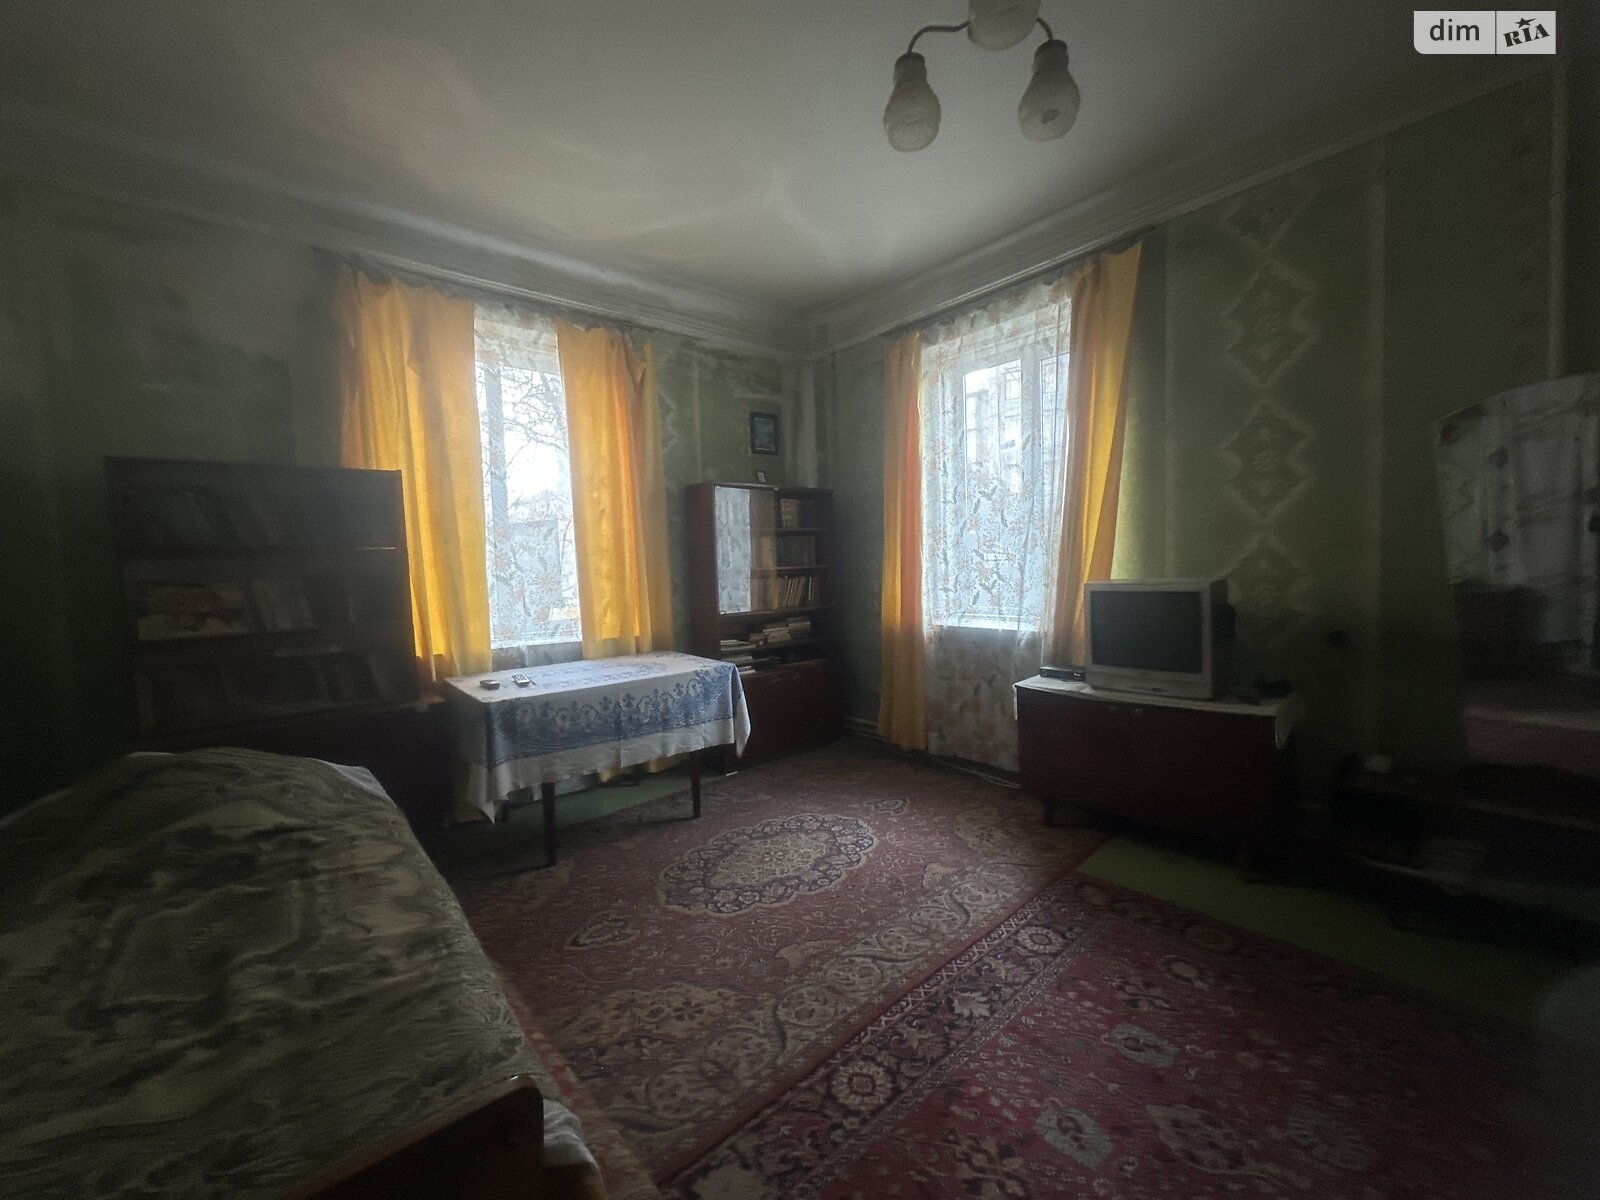 Продажа части дома в Житомире, улица Гоголевская, 2 комнаты фото 1